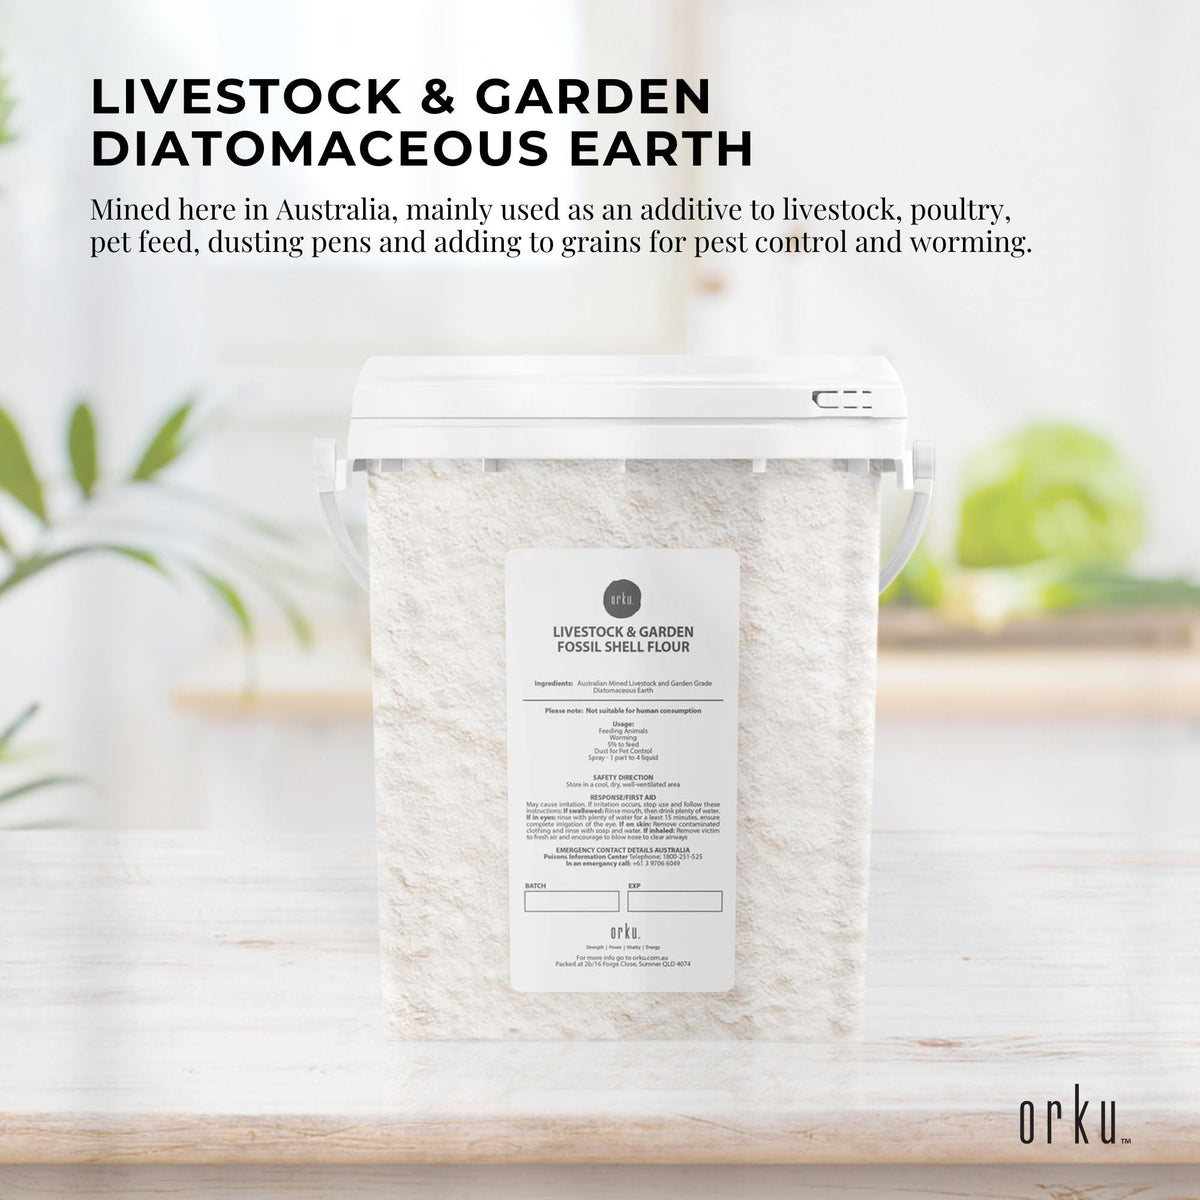 700g Organic Fossil Shell Flour Tub - Livestock Garden Grade Diatomaceous Earth